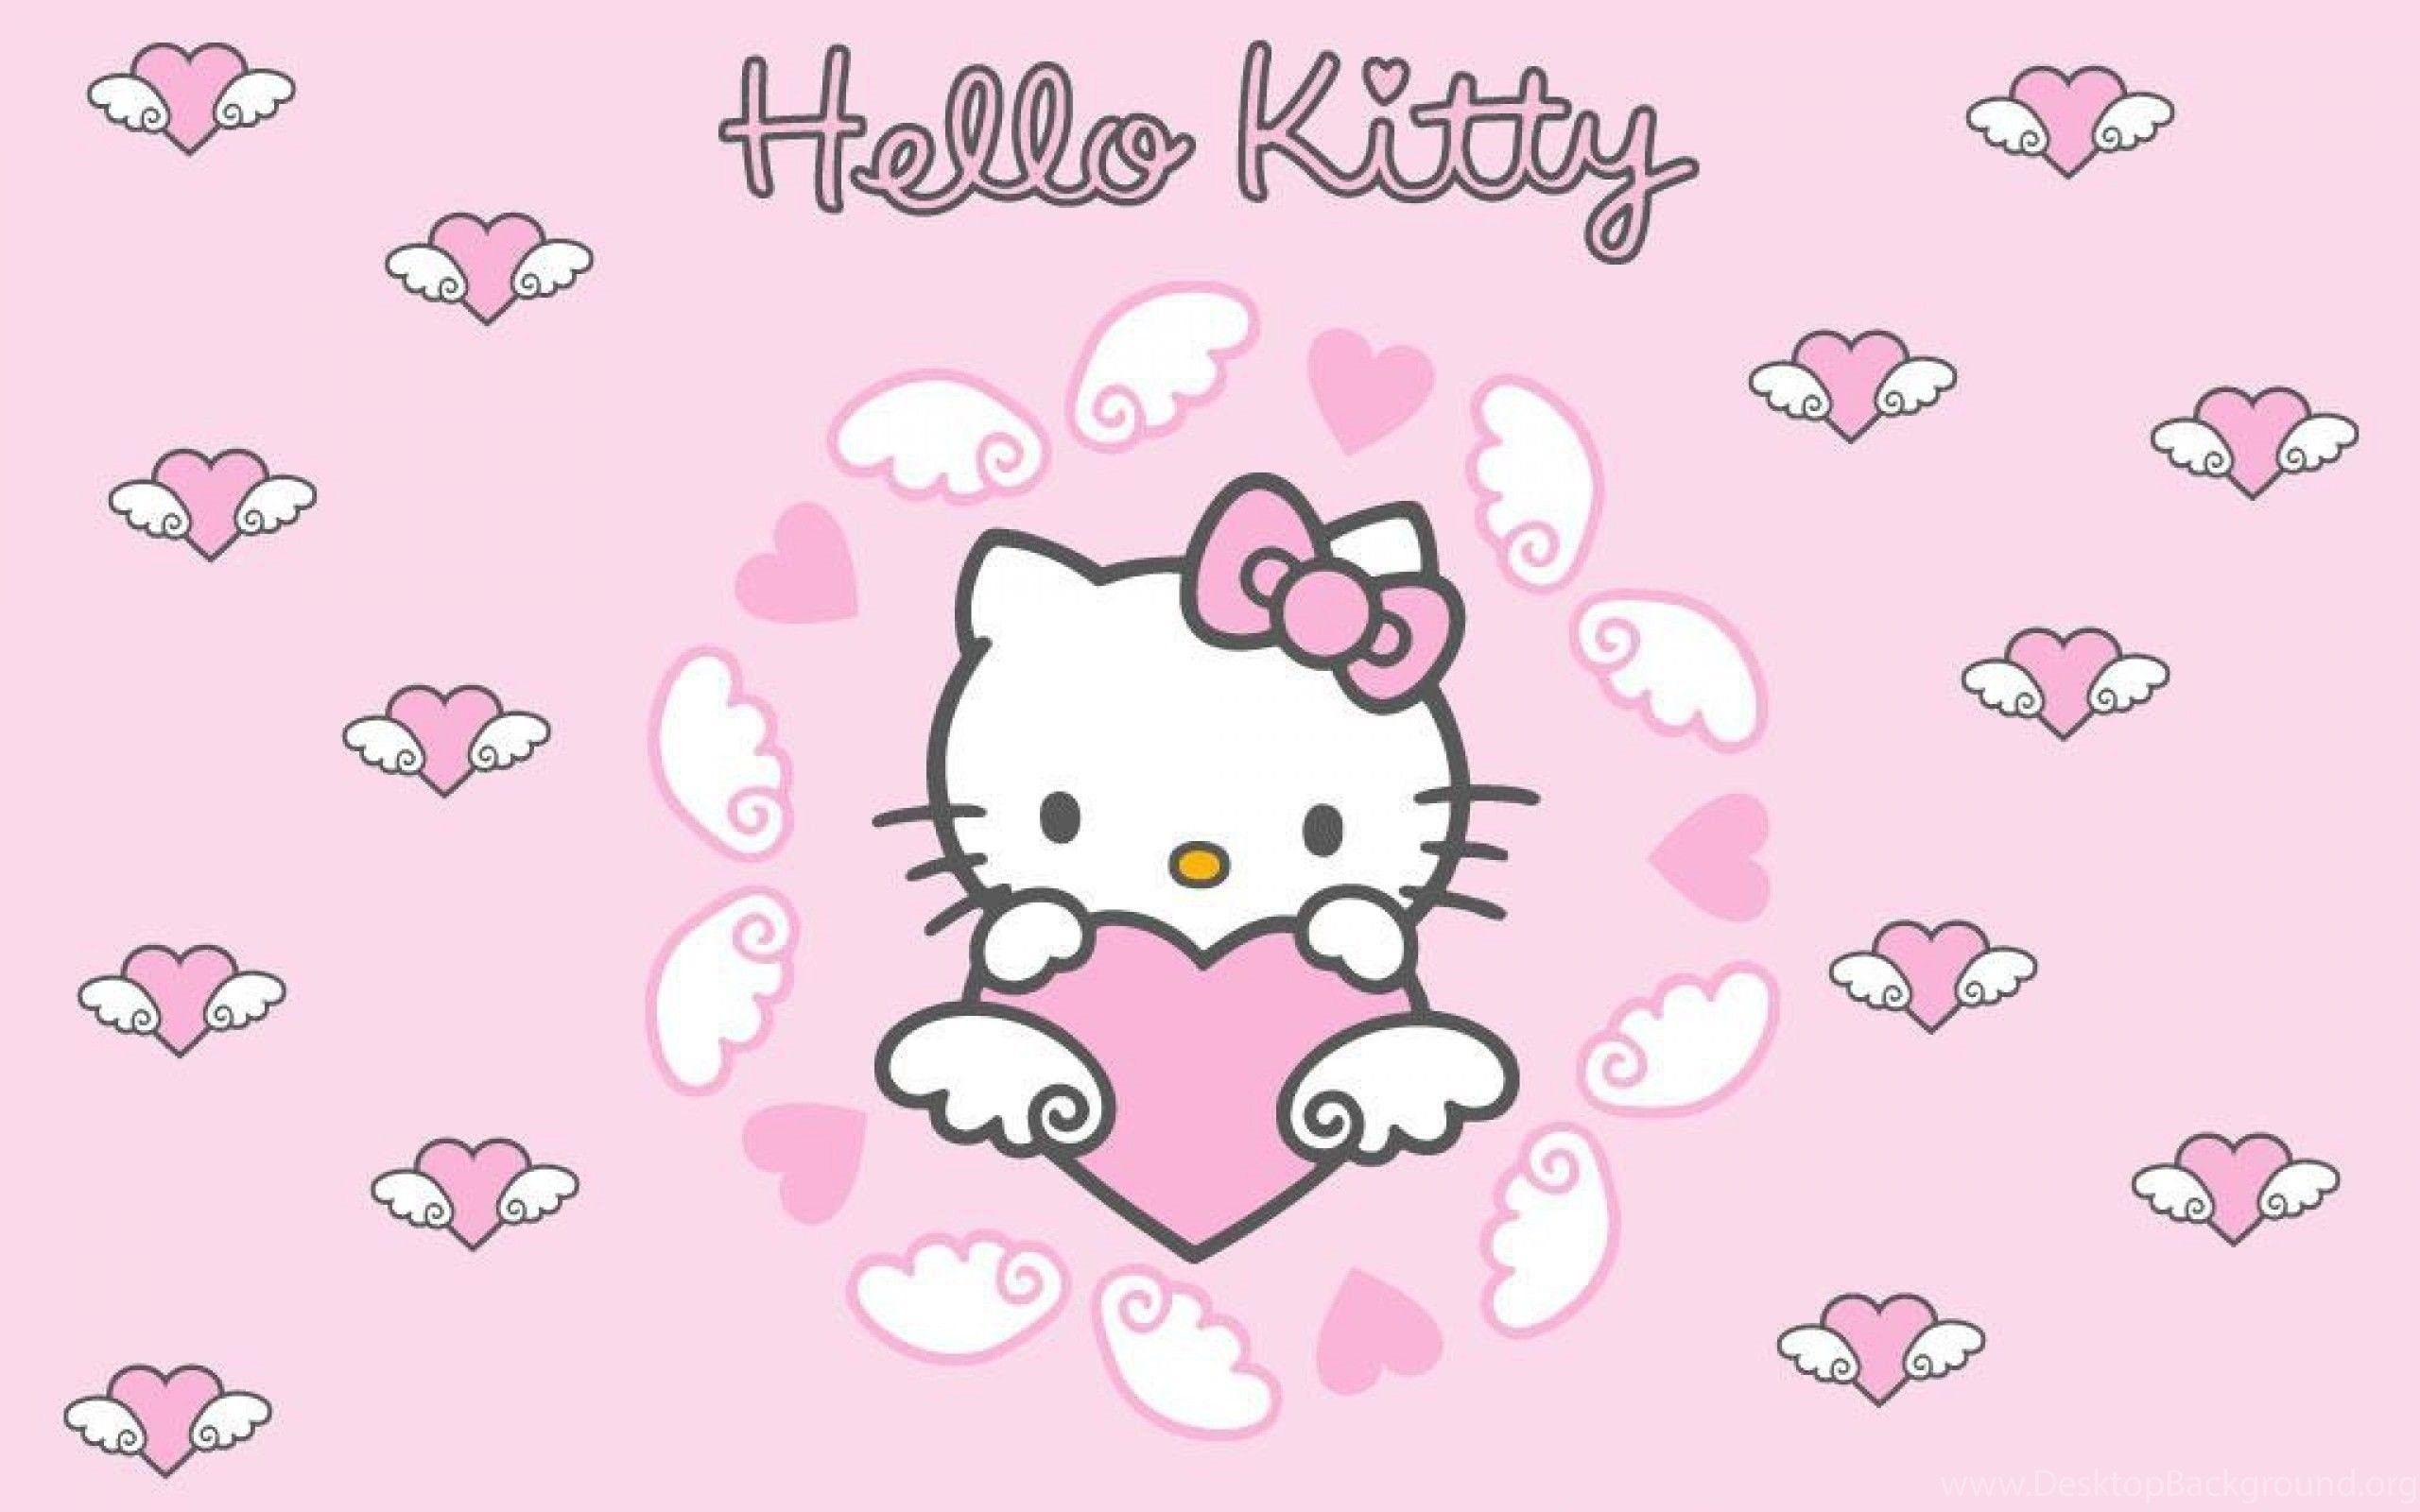 Hello kitty wallpaper for your desktop - Hello Kitty, Sanrio